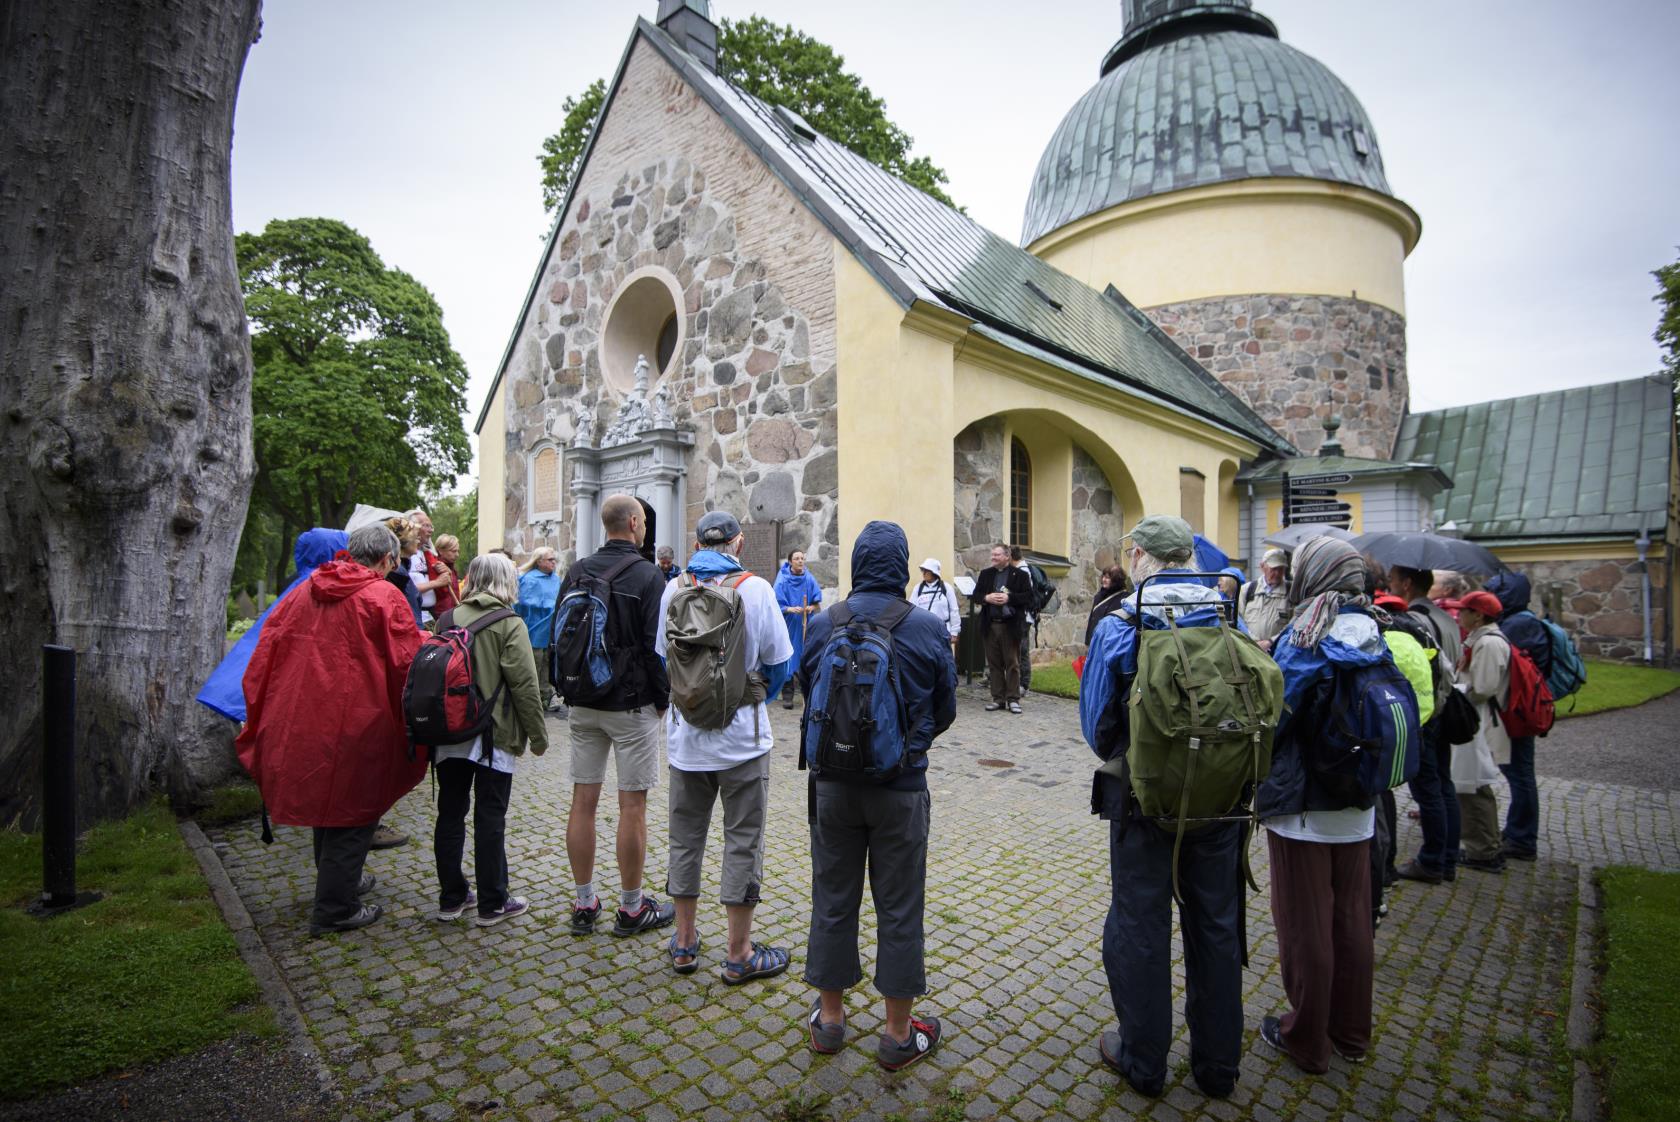 En grupp vandrare står utanför en kyrka.